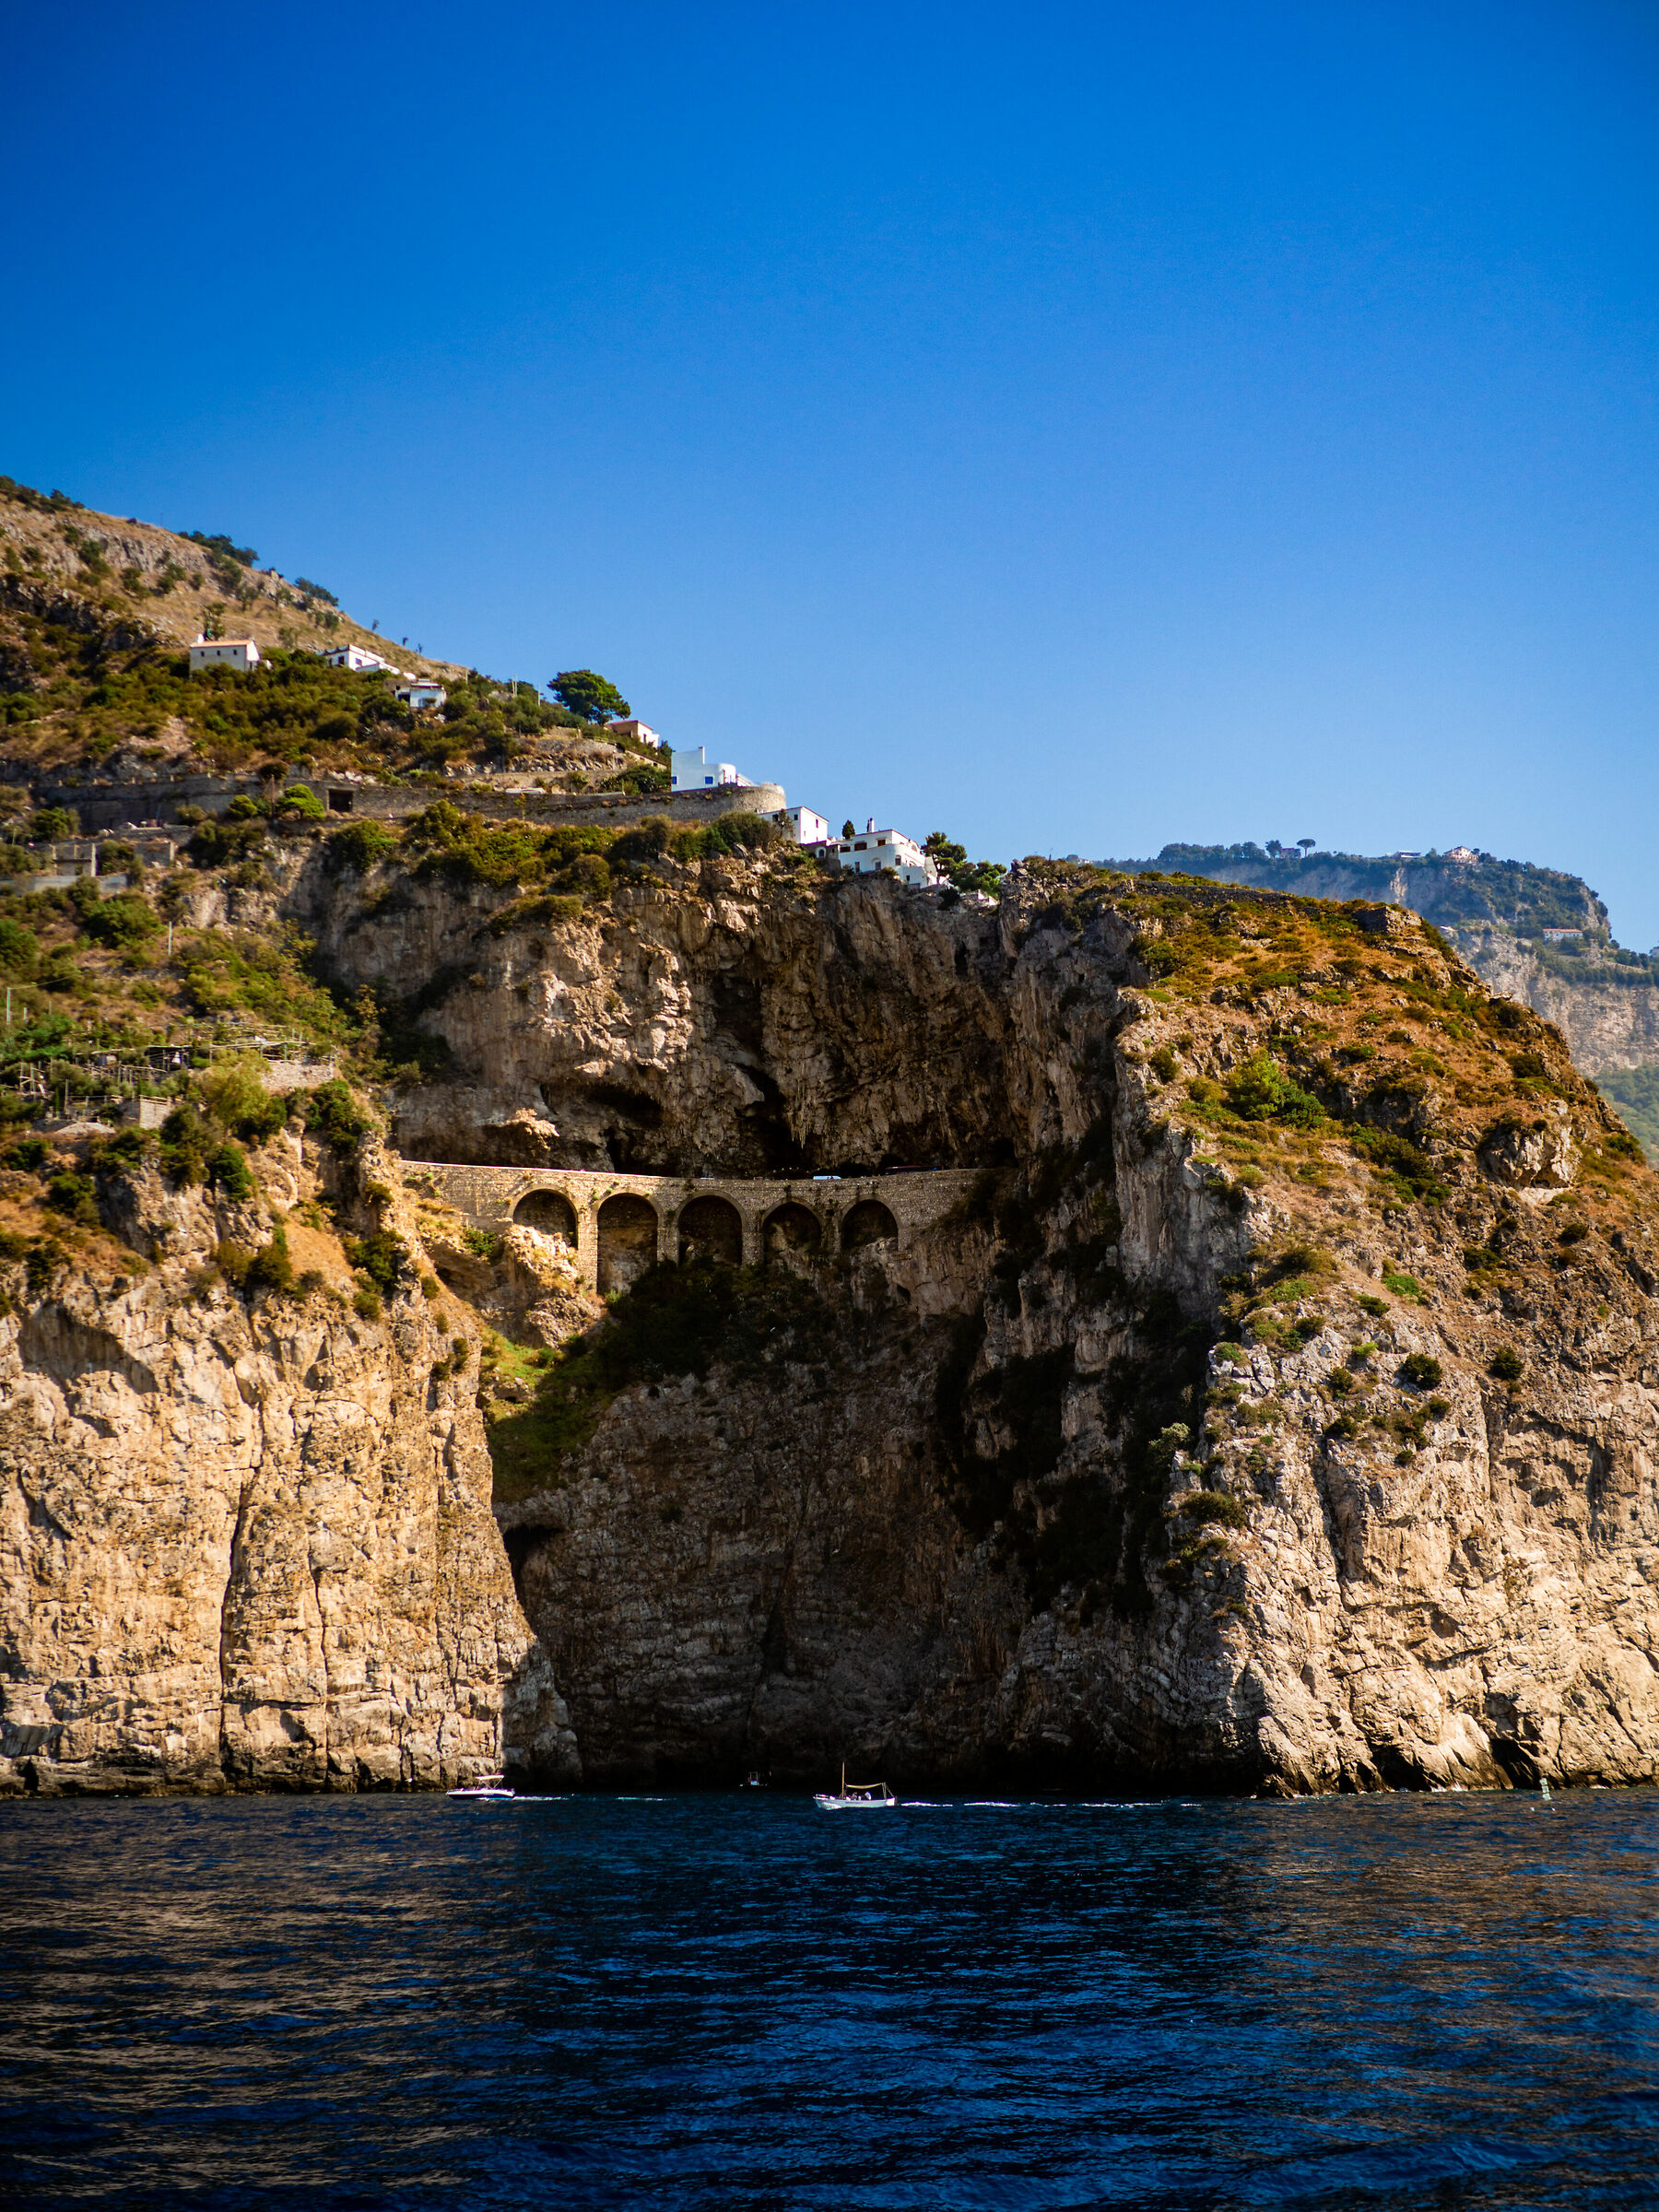 glimpse of the Amalfi Coast...